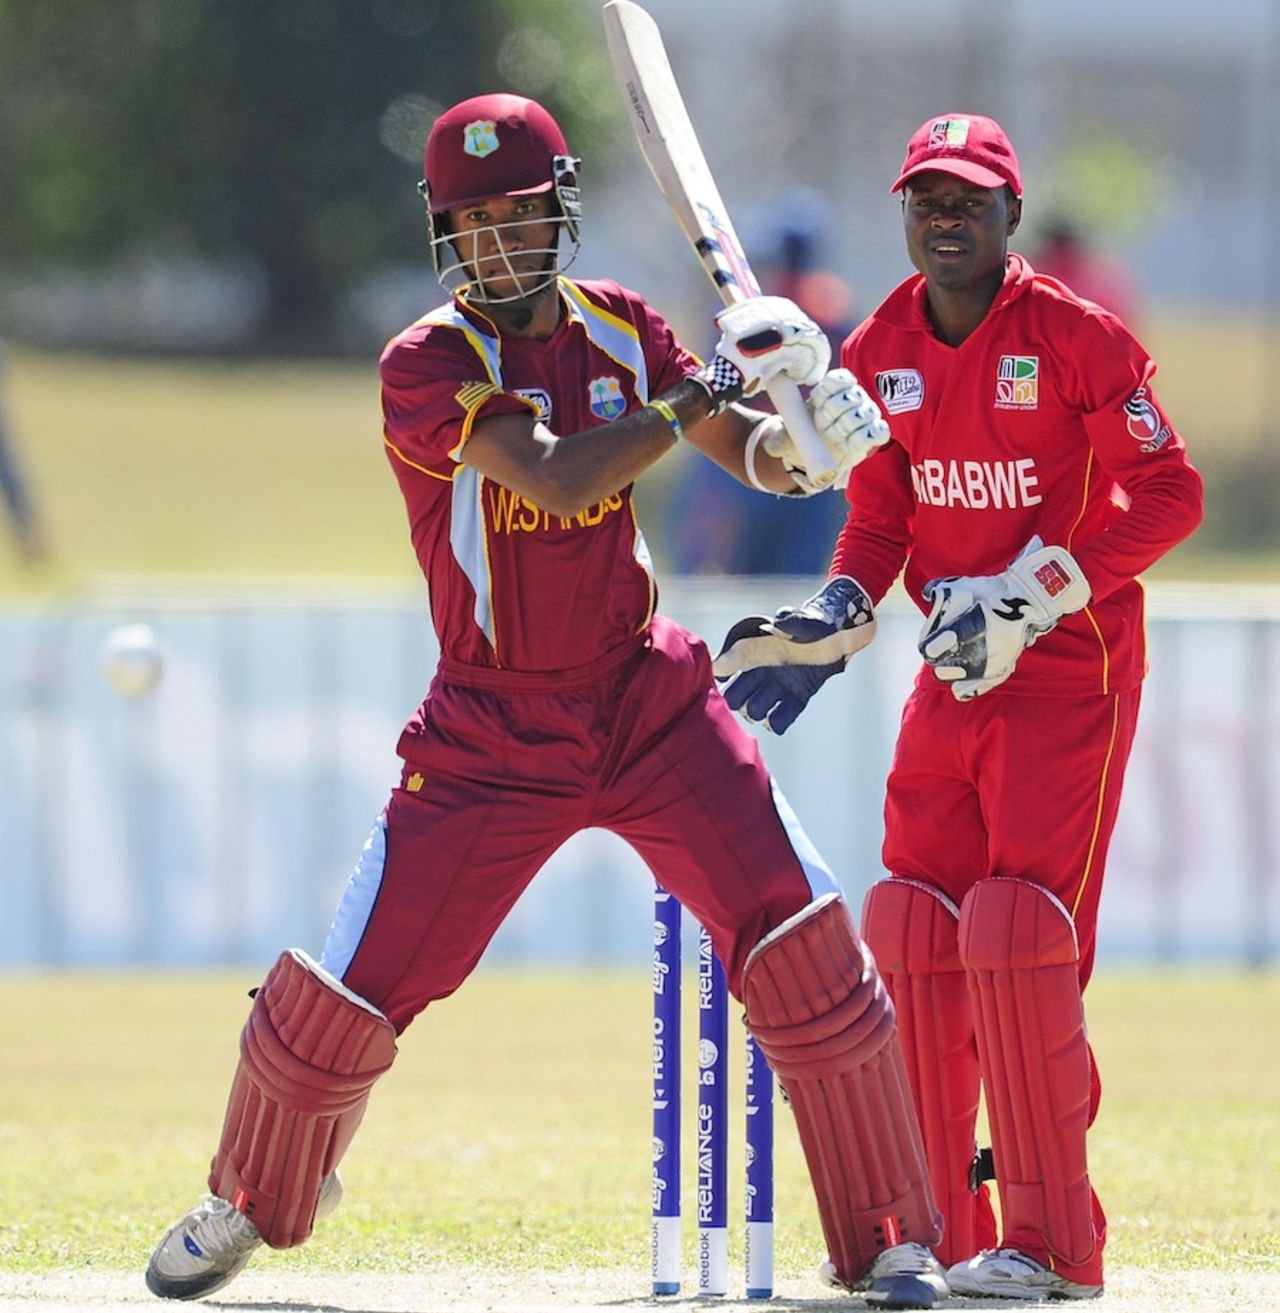 Kraigg Brathwaite pulls a ball towards mid-wicket, West Indies v Zimbabwe, Group C, ICC Under-19 World Cup 2012, Townsville, August 16, 2012